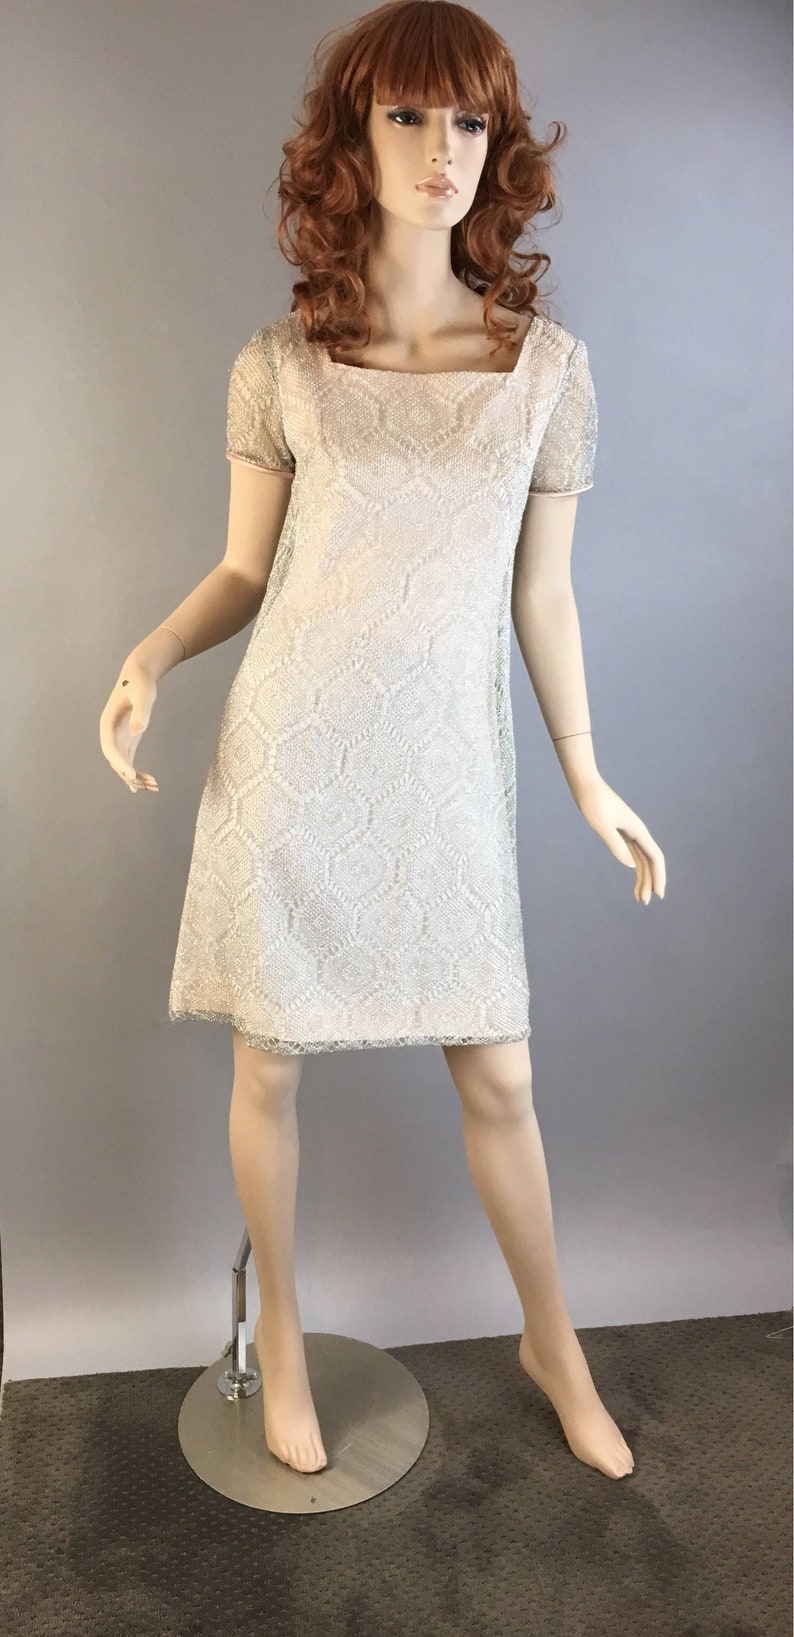 Vintage Mod 60s Dress// Sparkling Silver Vintage Dress// Mod Shift Dress image 1